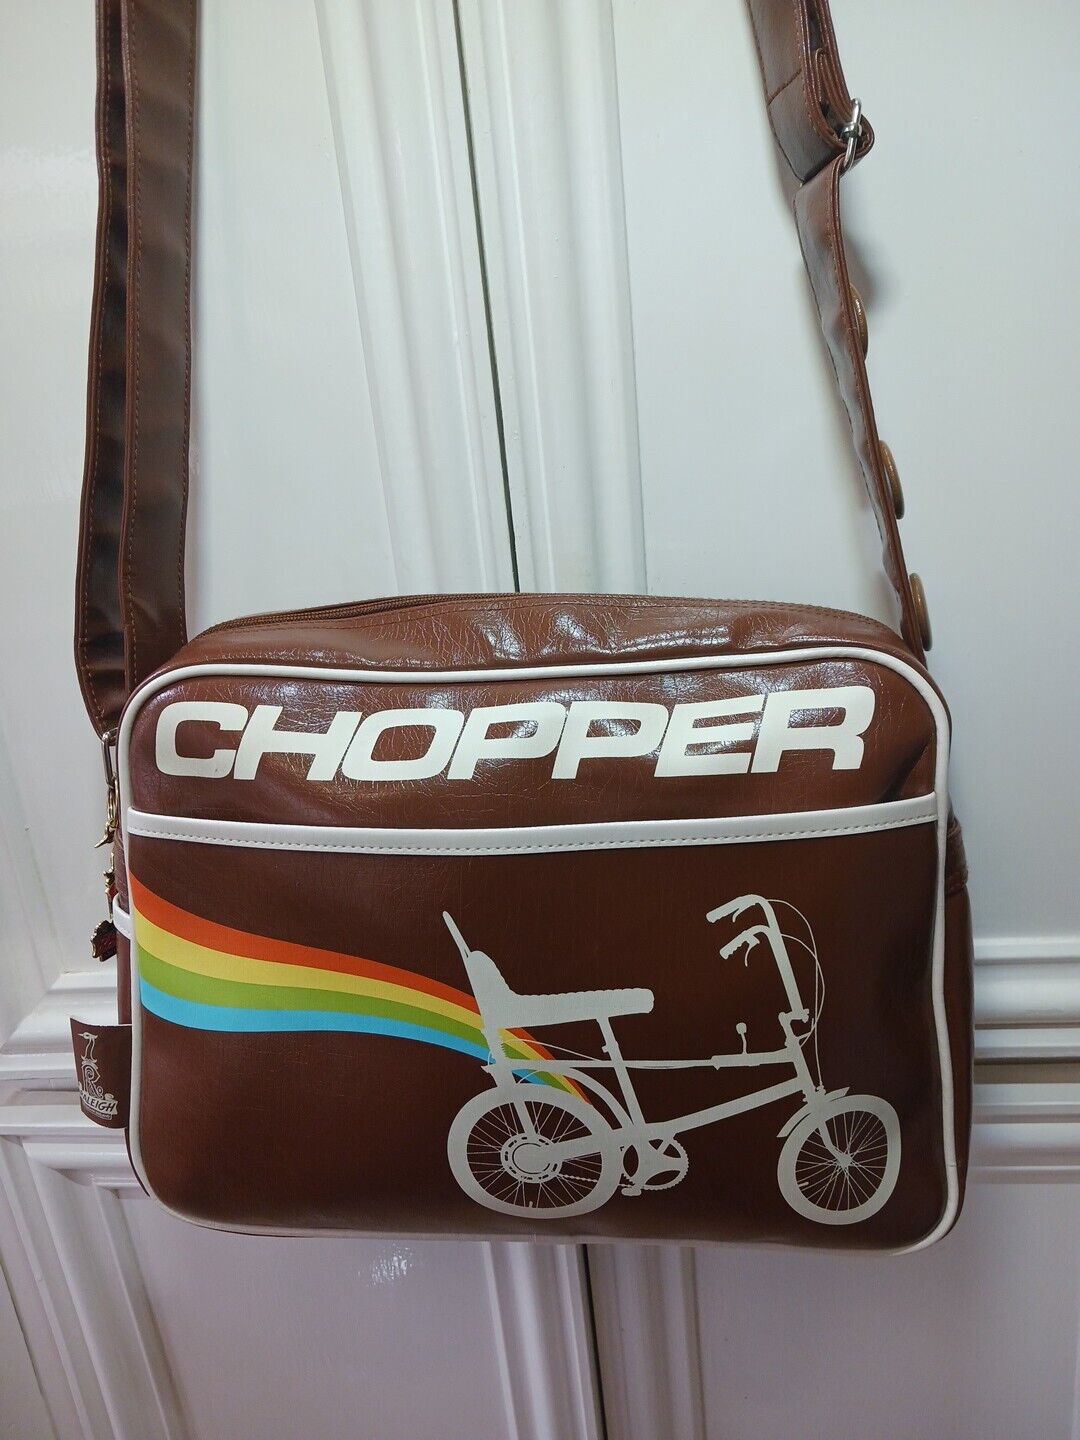 Raleigh Chopper messenger / shoulder bag,  vintage/ rare bicycles